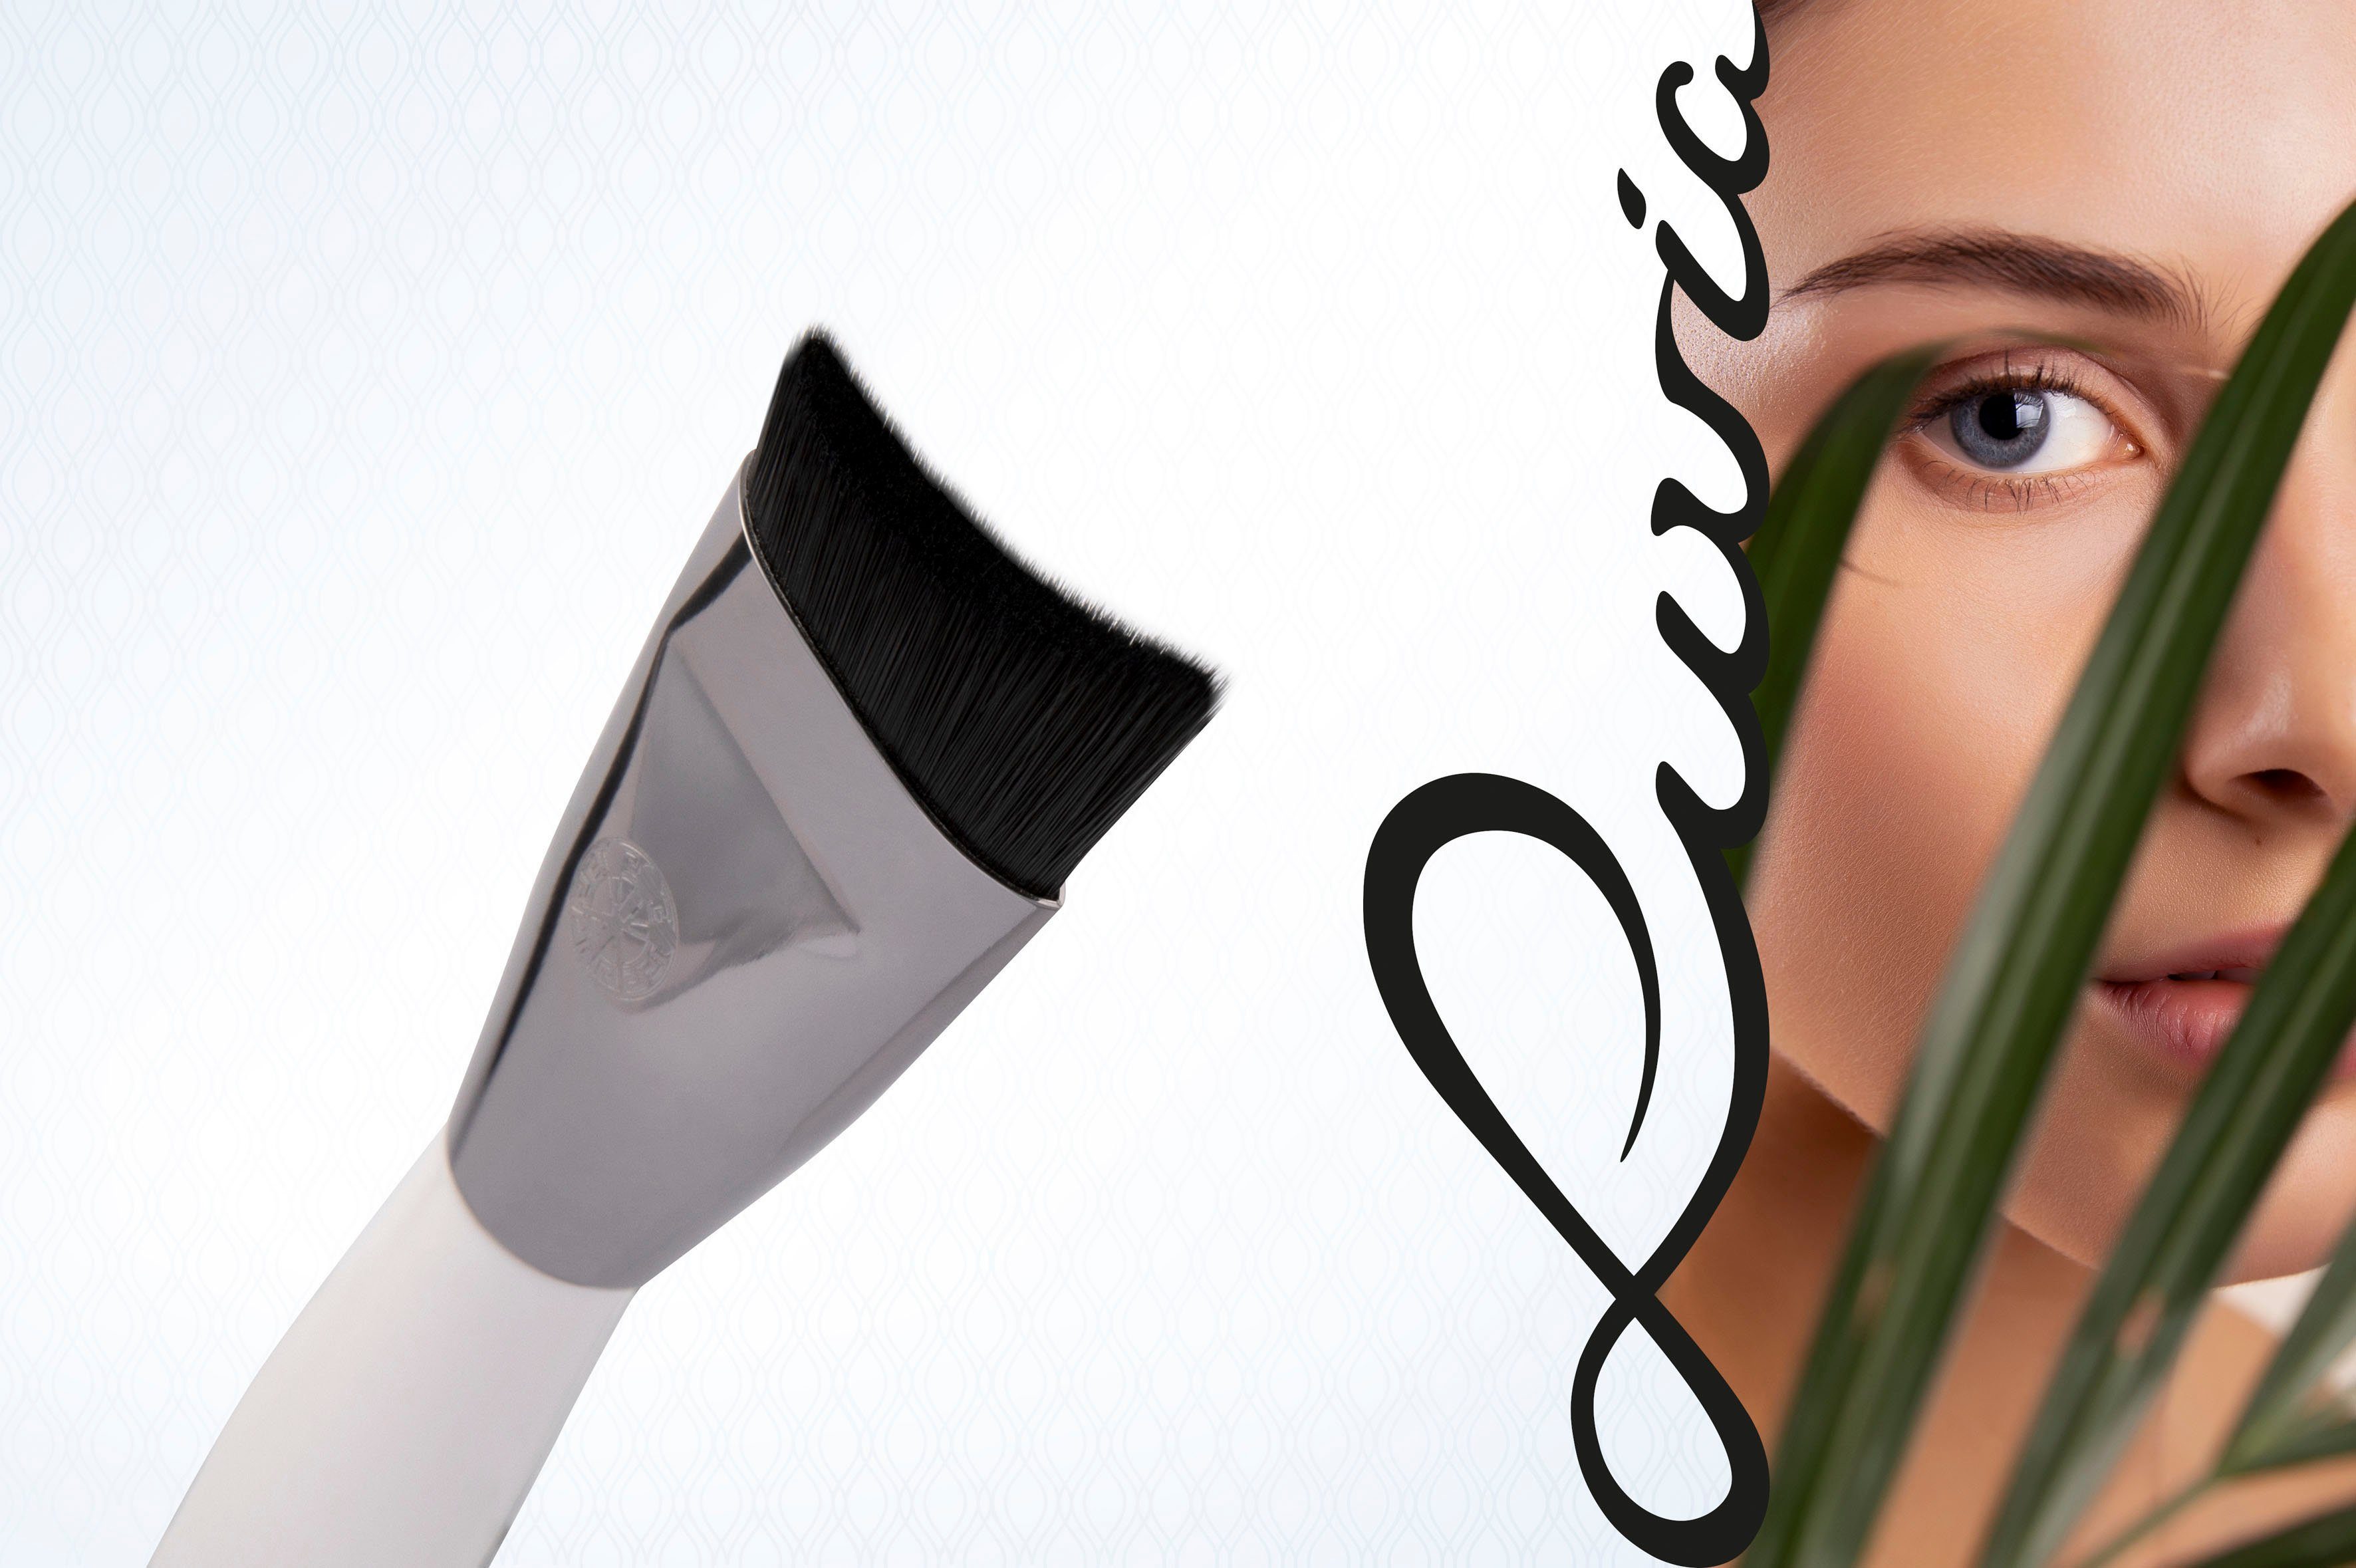 Auftragen Moisturizer zum Cosmetics Brush, von Gesichtscreme Luvia Serum und Pinsel Maskenpinsel